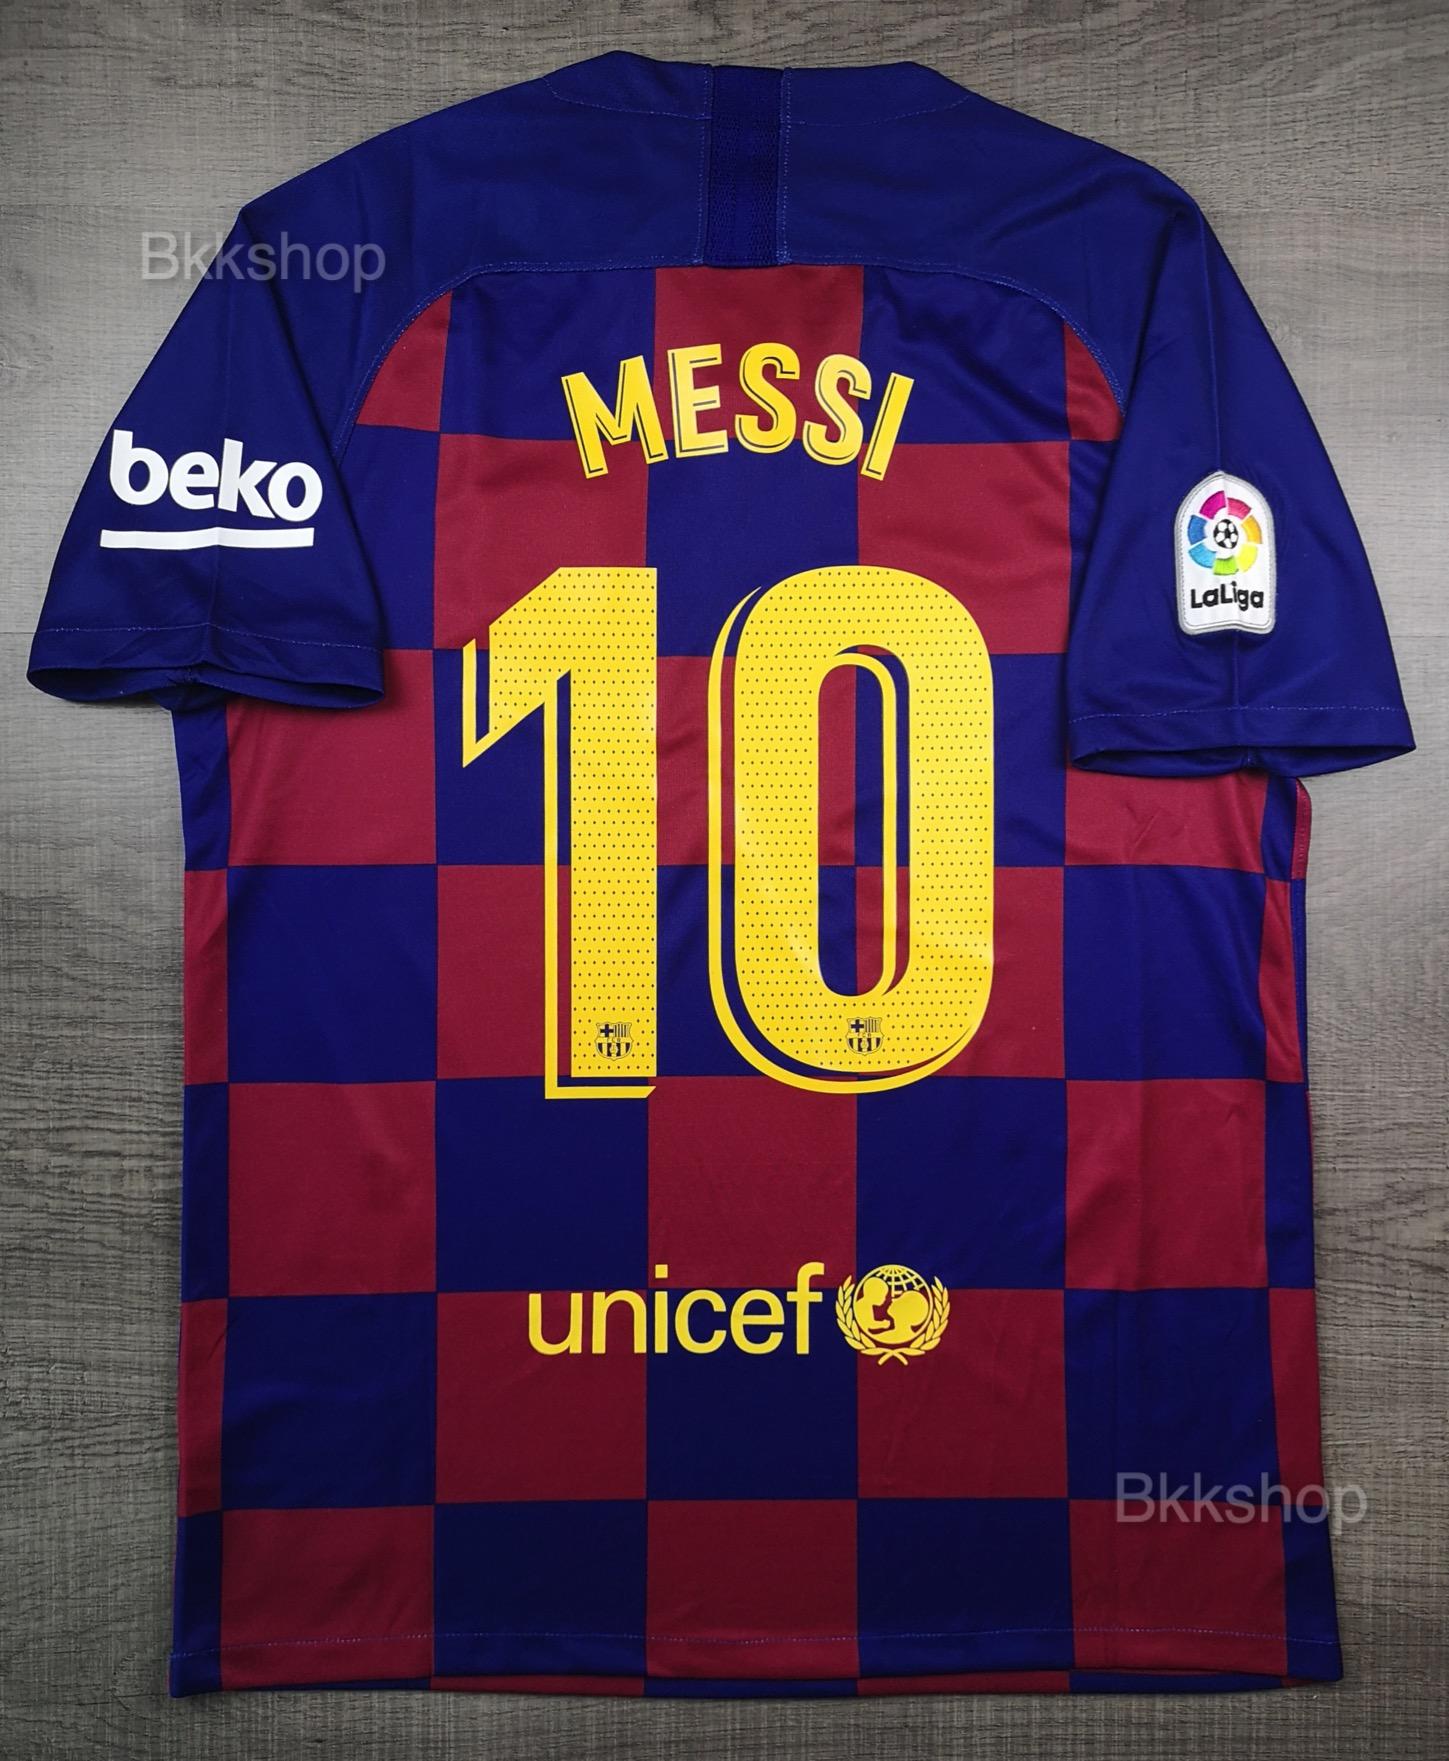 เสื้อบอล บาร์เซโลน่า เหย้า 2019-20 Barcelona Home พร้อมเบอร์ชื่อ10 MESSI อาร์ม LFP และ Beko บาซ่า เมสซี่